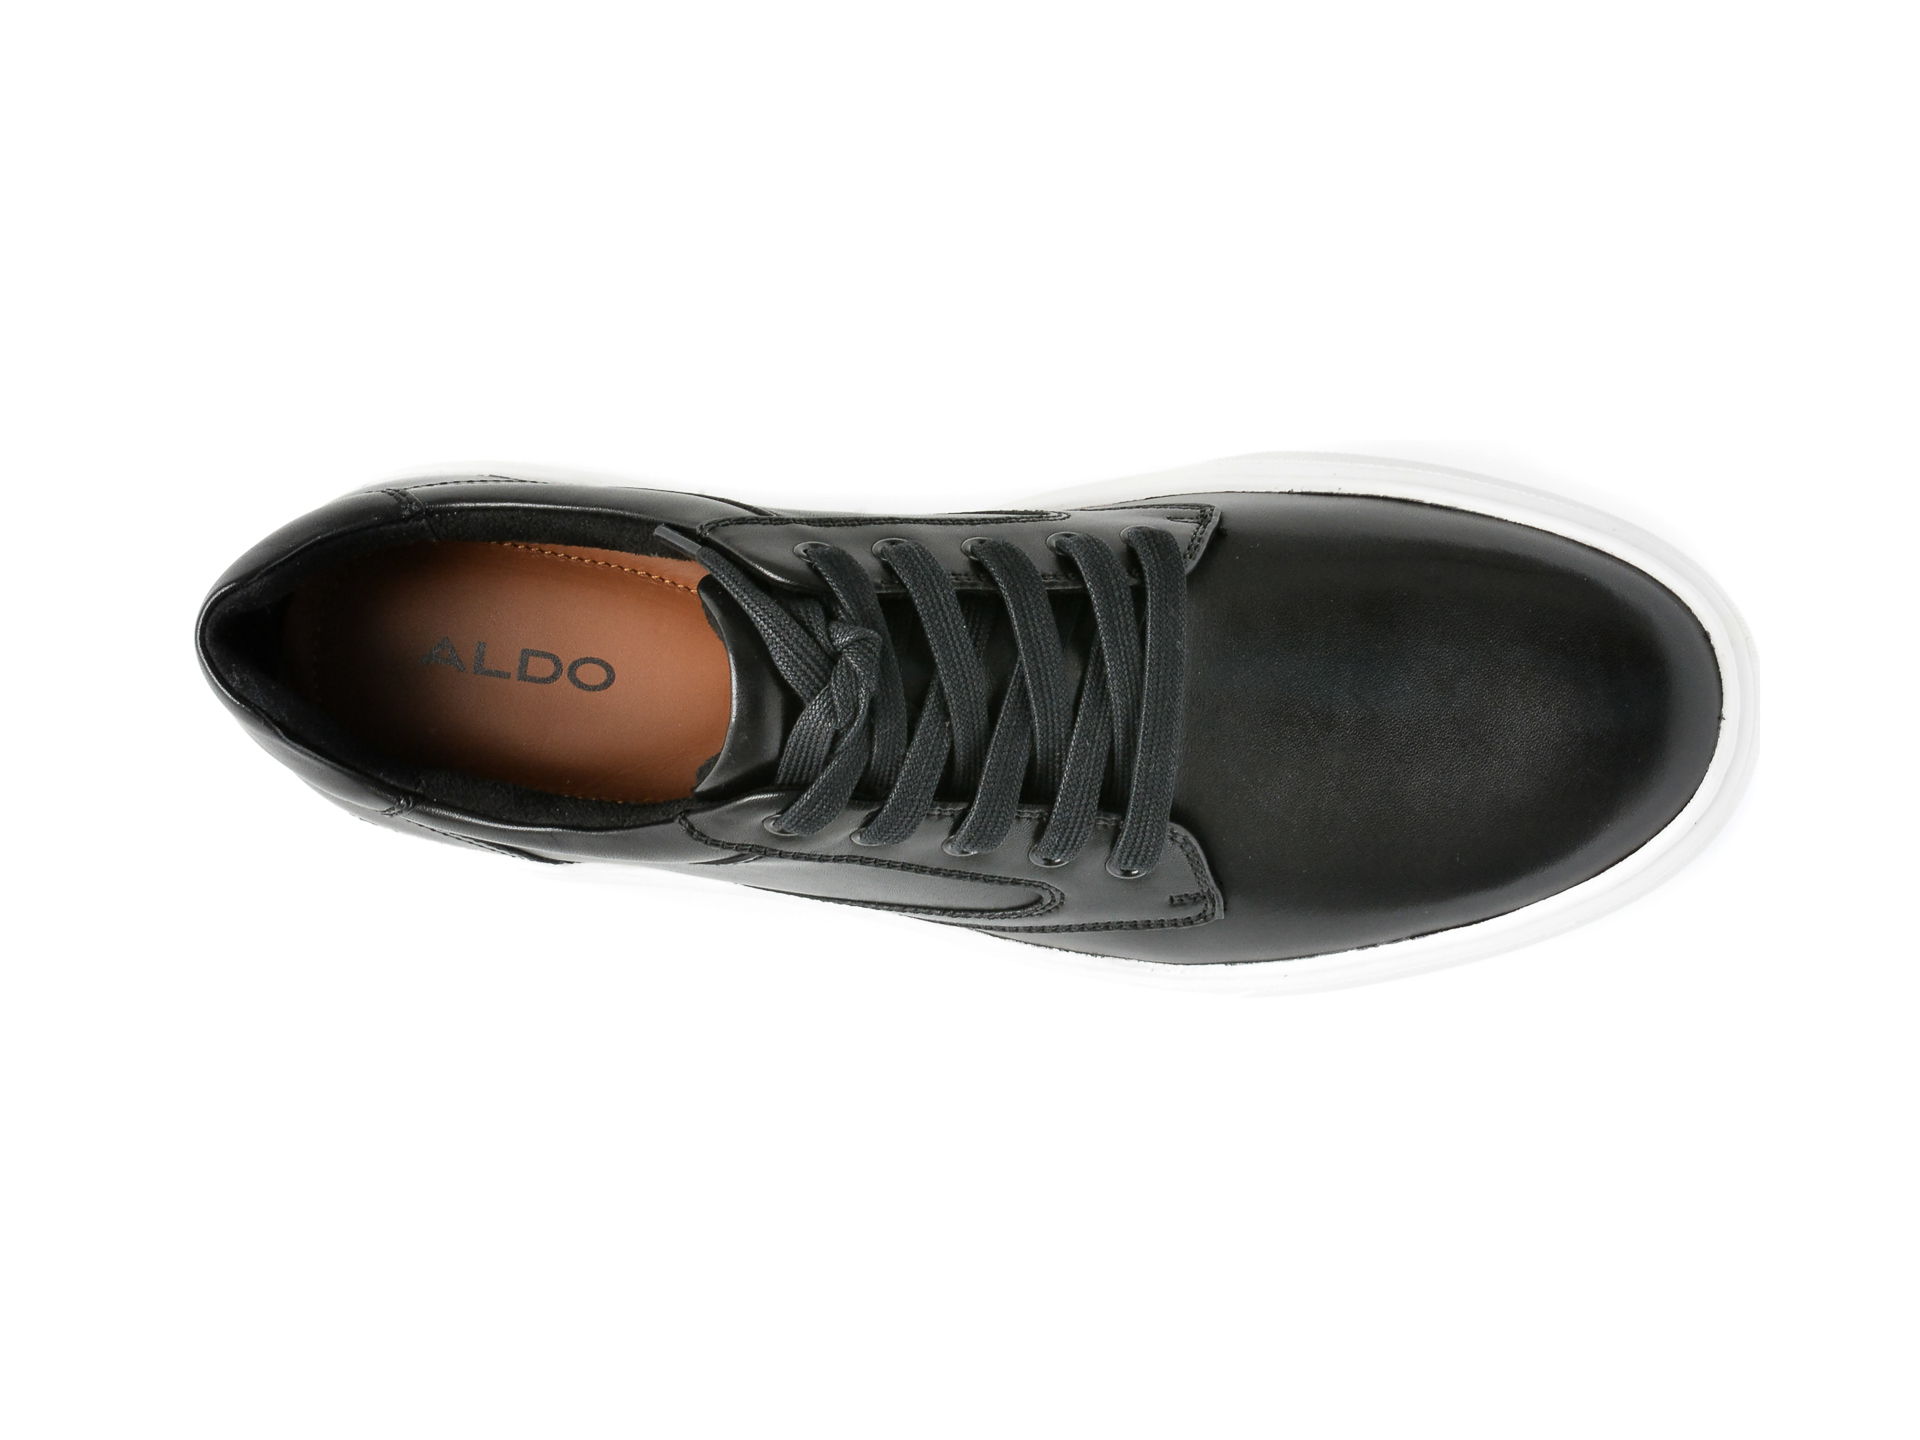 Poze Pantofi ALDO negri, FEZZ001, din piele naturala otter.ro